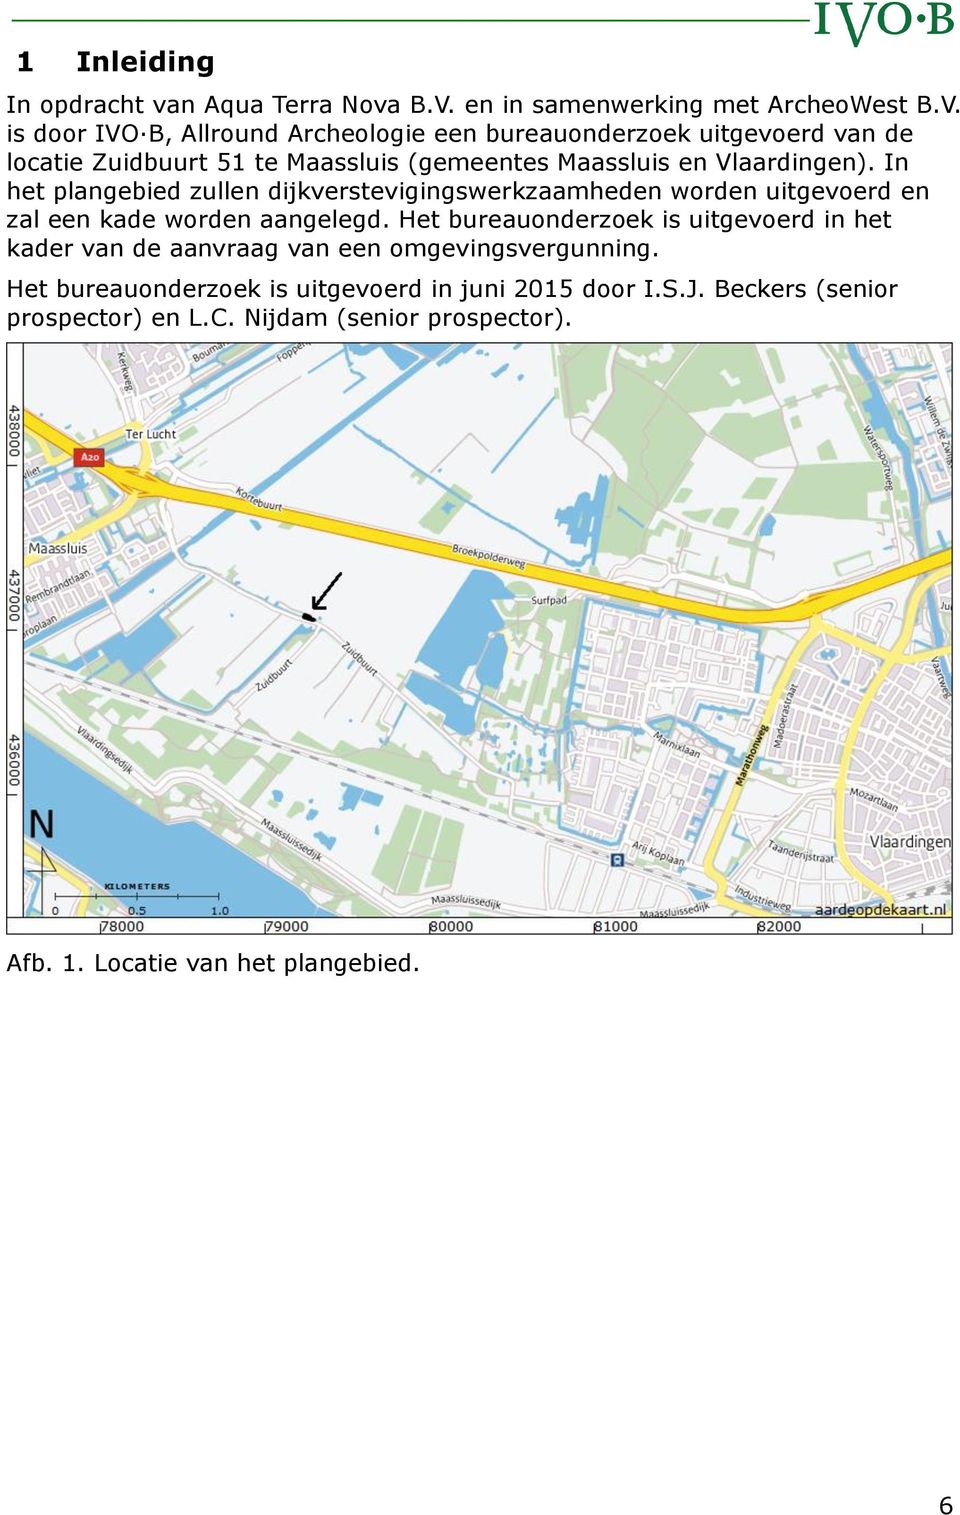 is door IVO B, Allround Archeologie een bureauonderzoek uitgevoerd van de locatie Zuidbuurt 51 te Maassluis (gemeentes Maassluis en Vlaardingen).